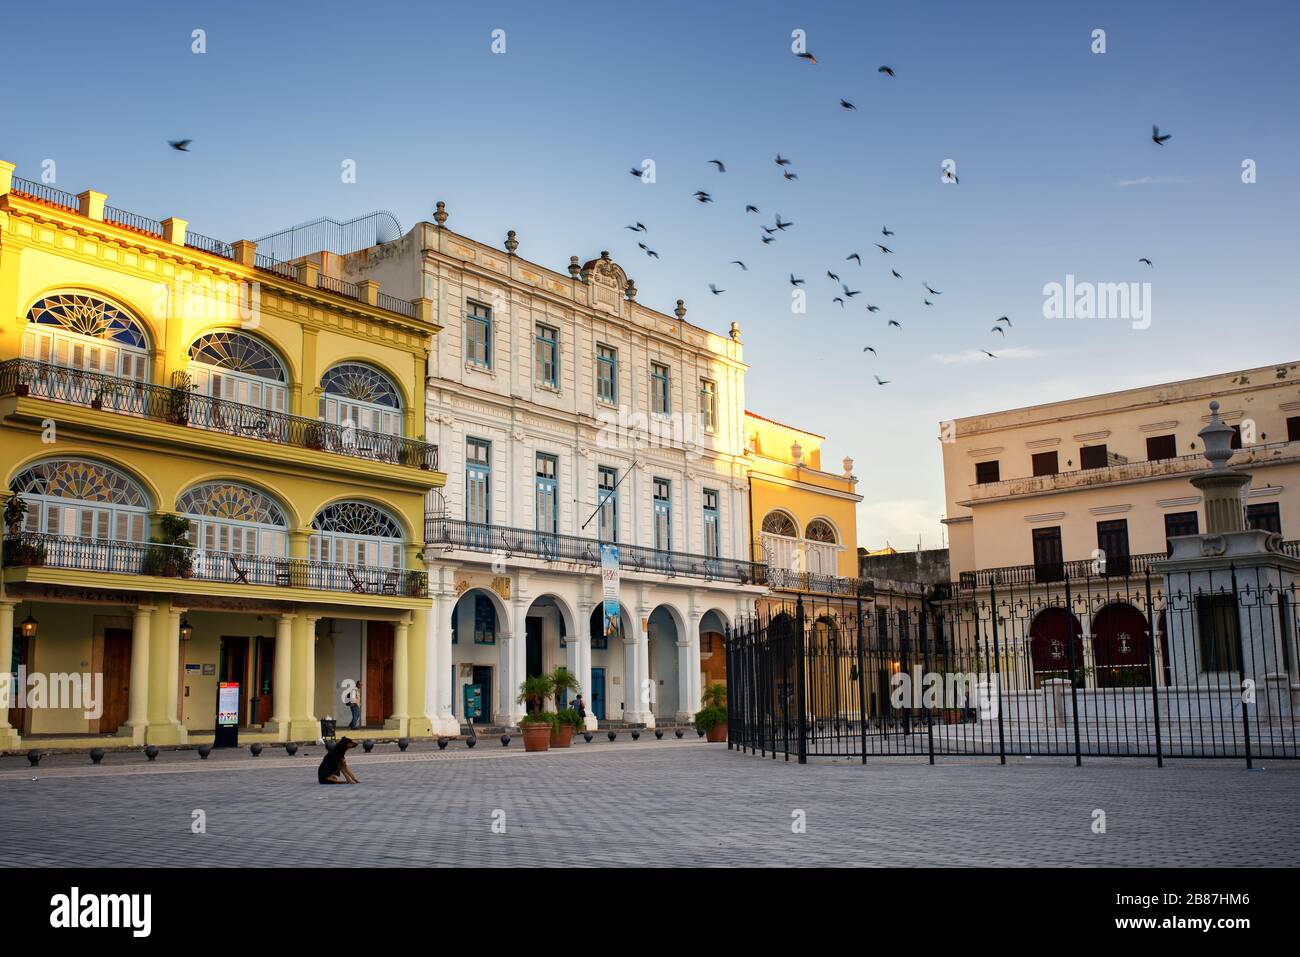 Vue tôt le matin sur la Plaza Vieja, la vieille Havane, Cuba. Bel exemple d'architecture coloniale. Banque D'Images